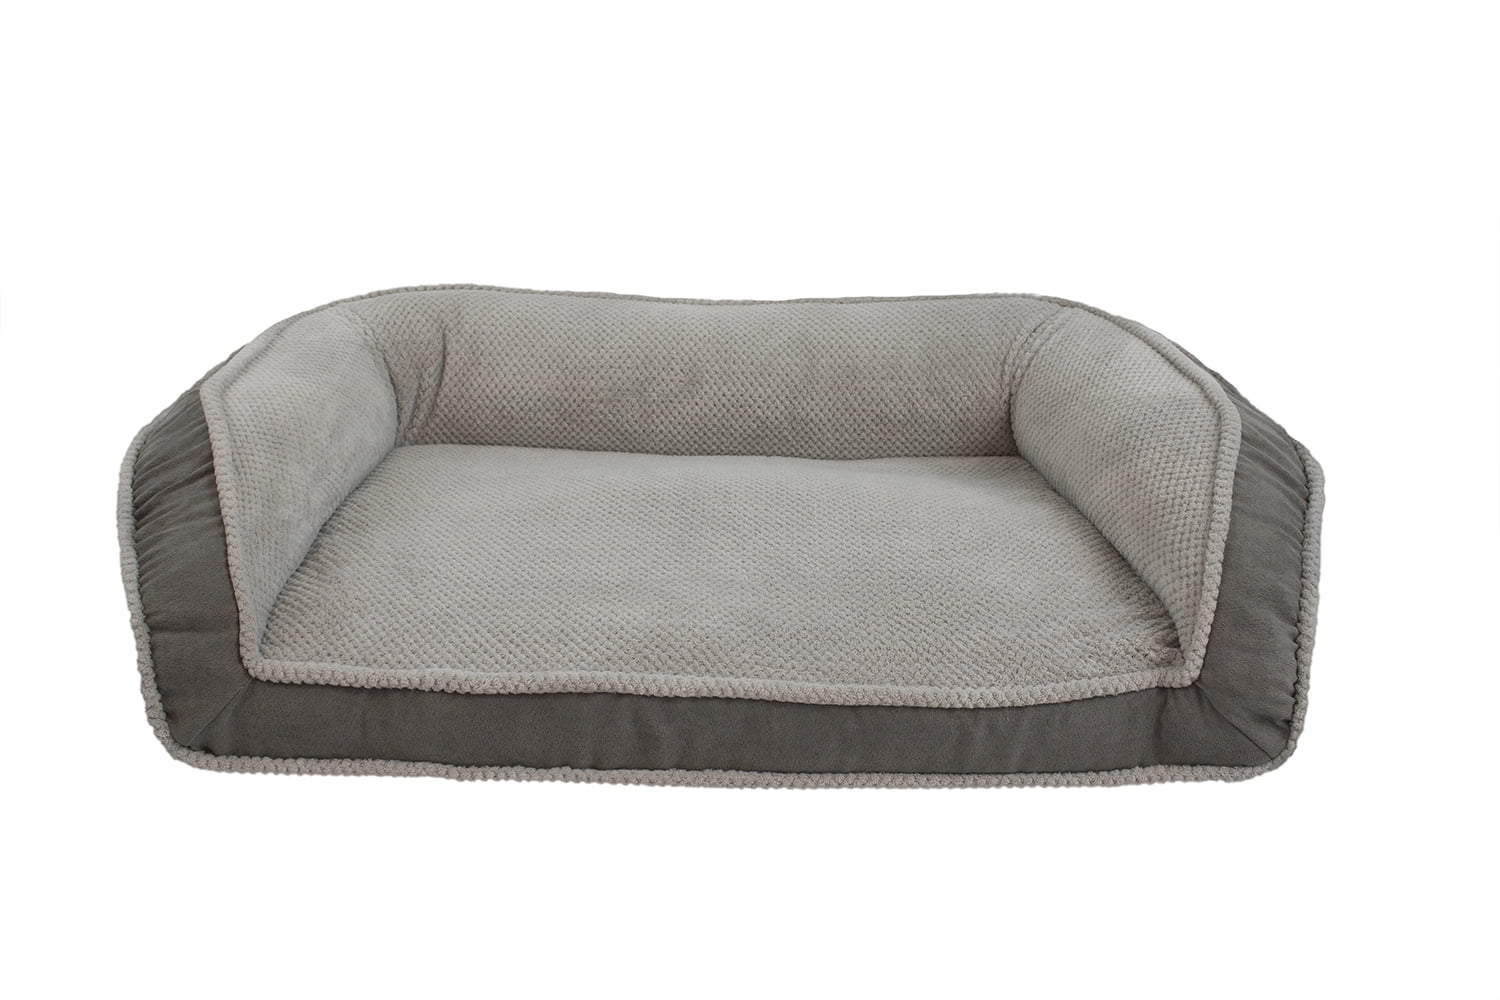 arlee memory foam sofa style pet bed